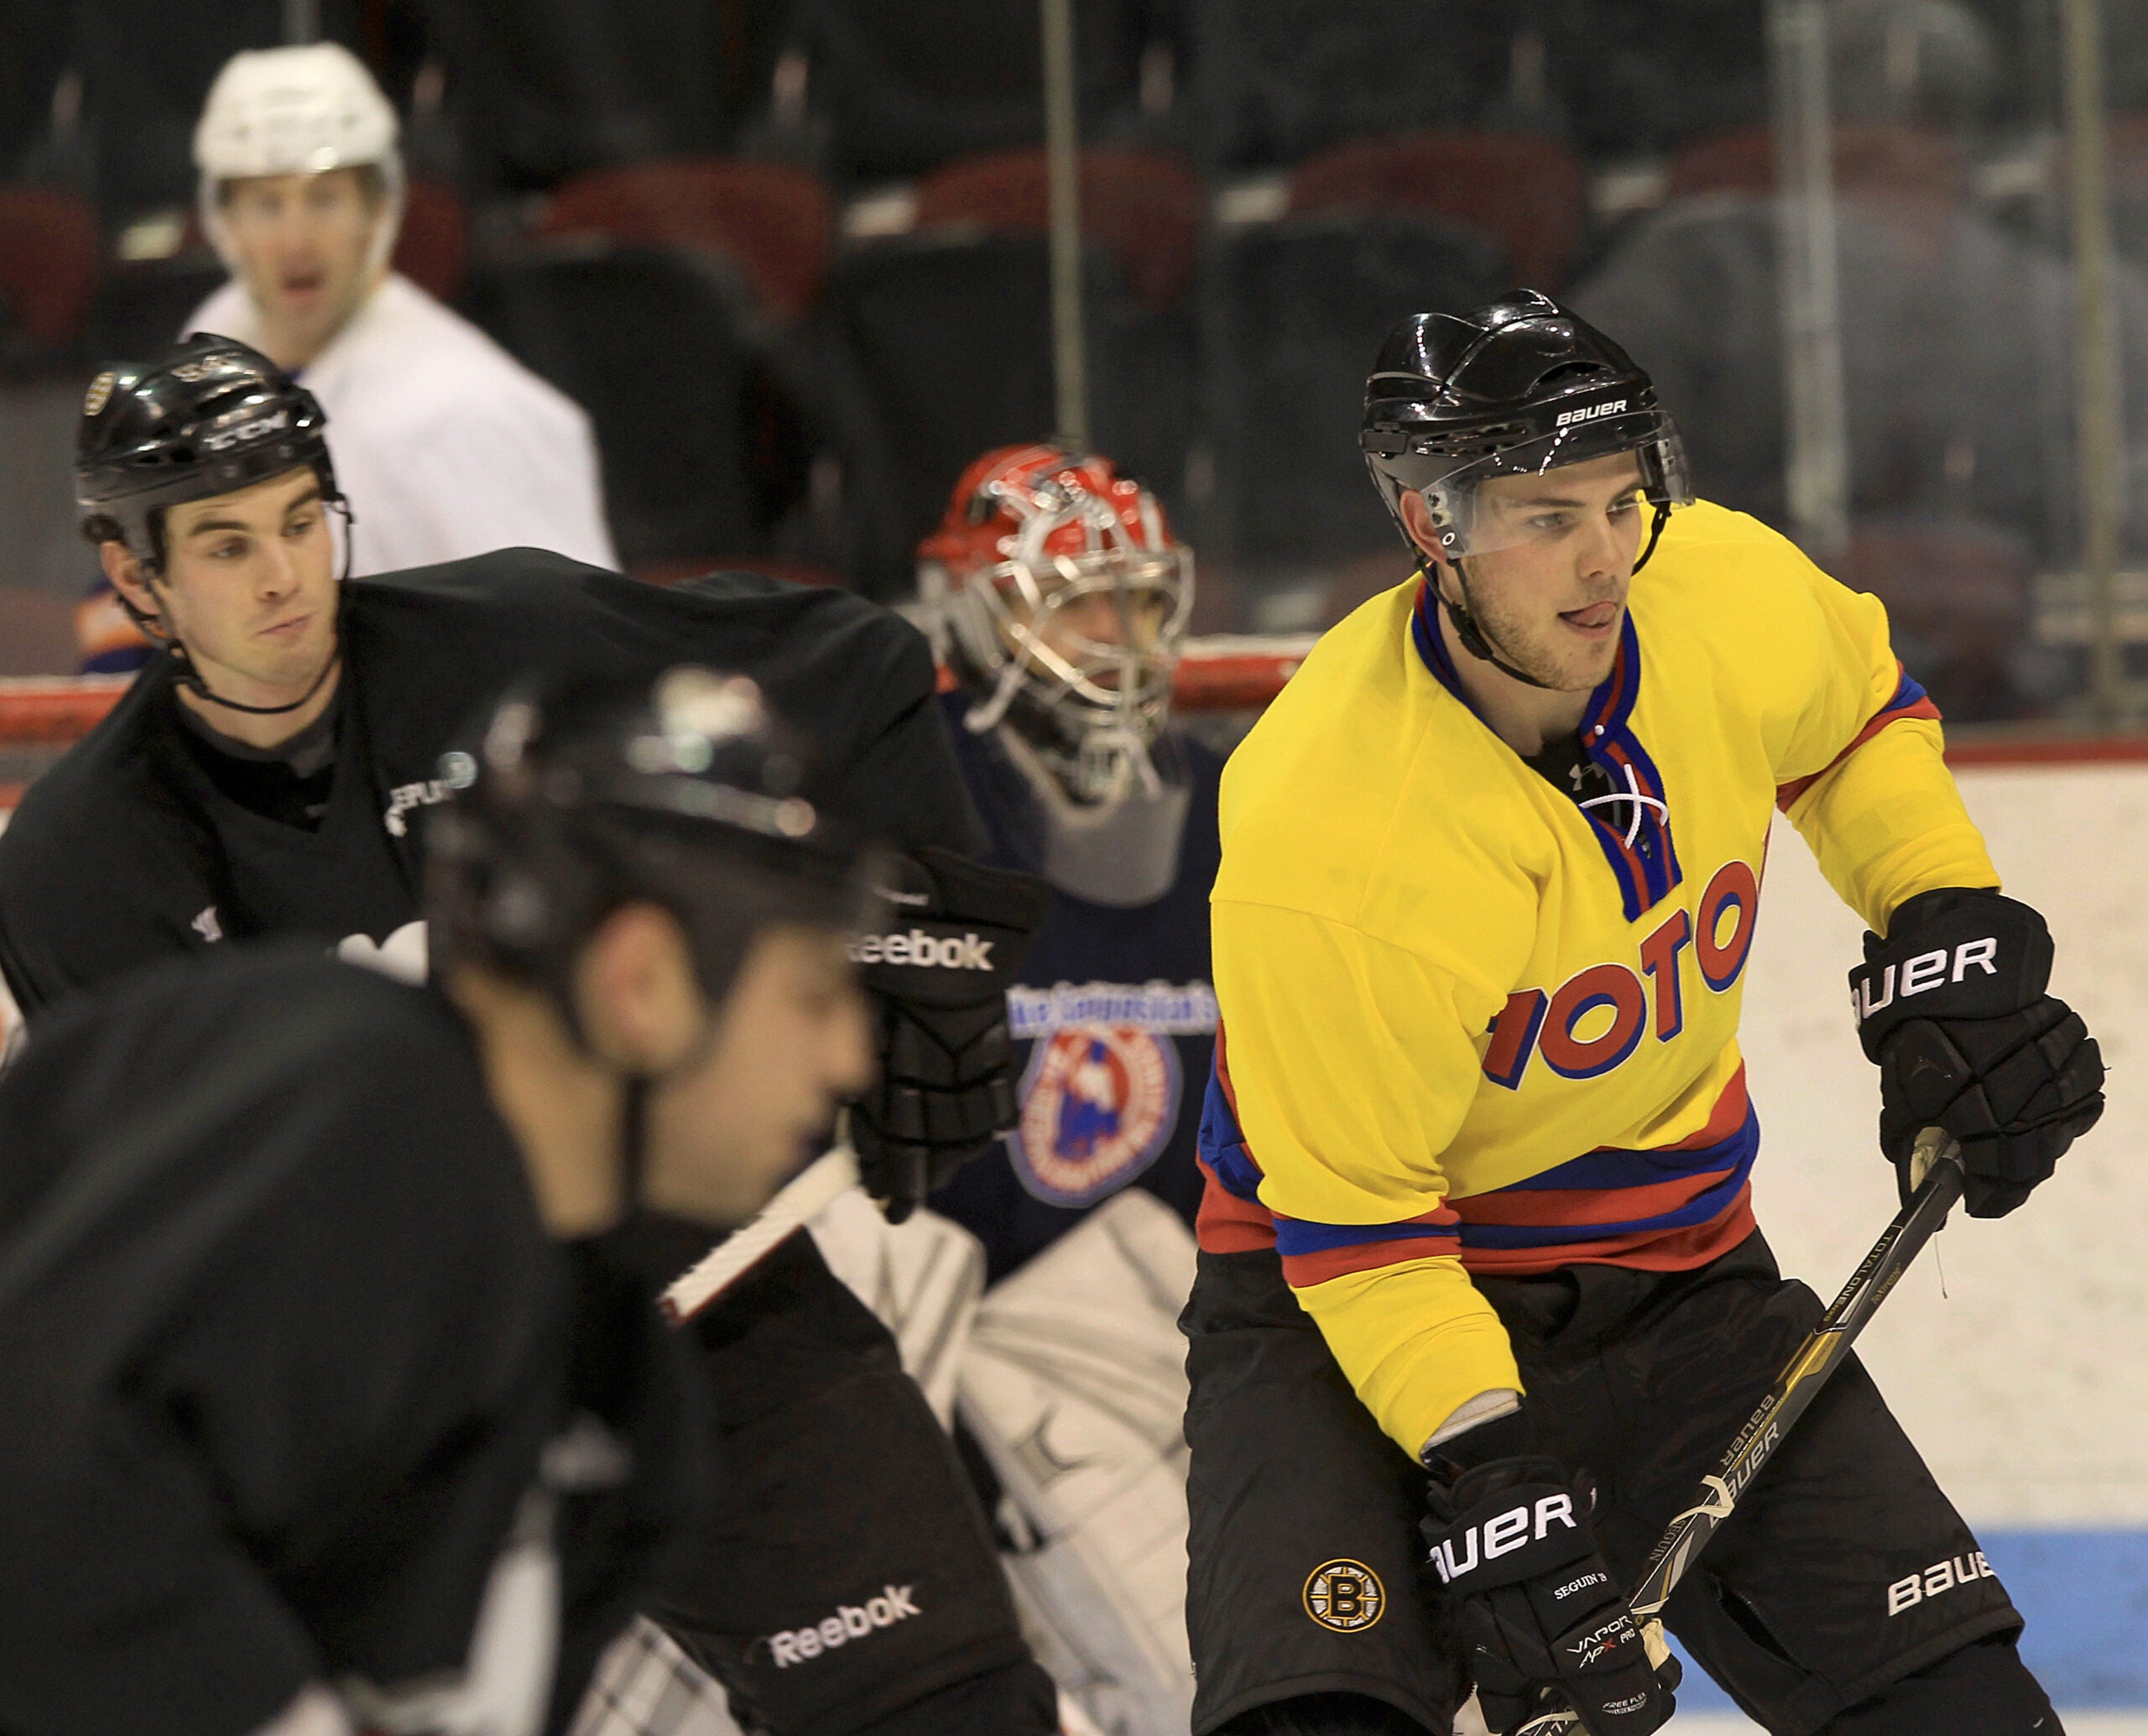 Inside the Bruins: Meet the new No. 19, Tyler Seguin